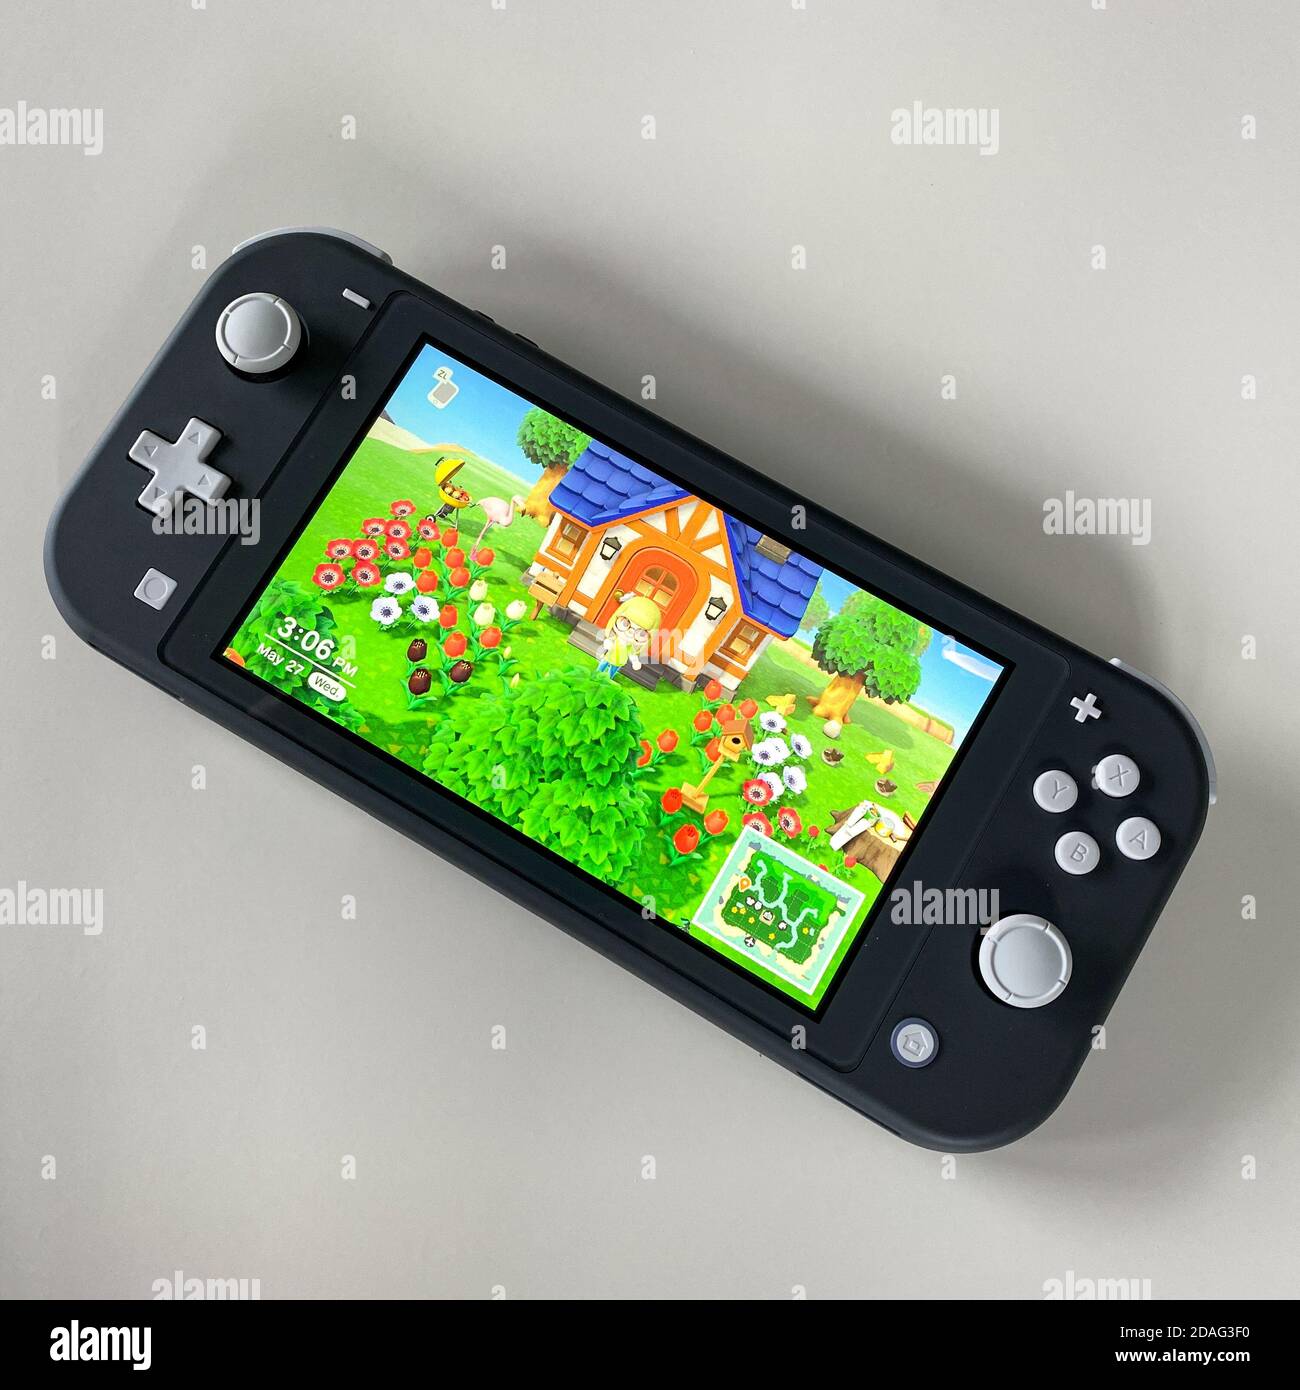 Orlando,FL/USA -5/27/20: Un Nintendo Switch Lite con el juego Animal Crossing New Horizons corriendo en él. Foto de stock